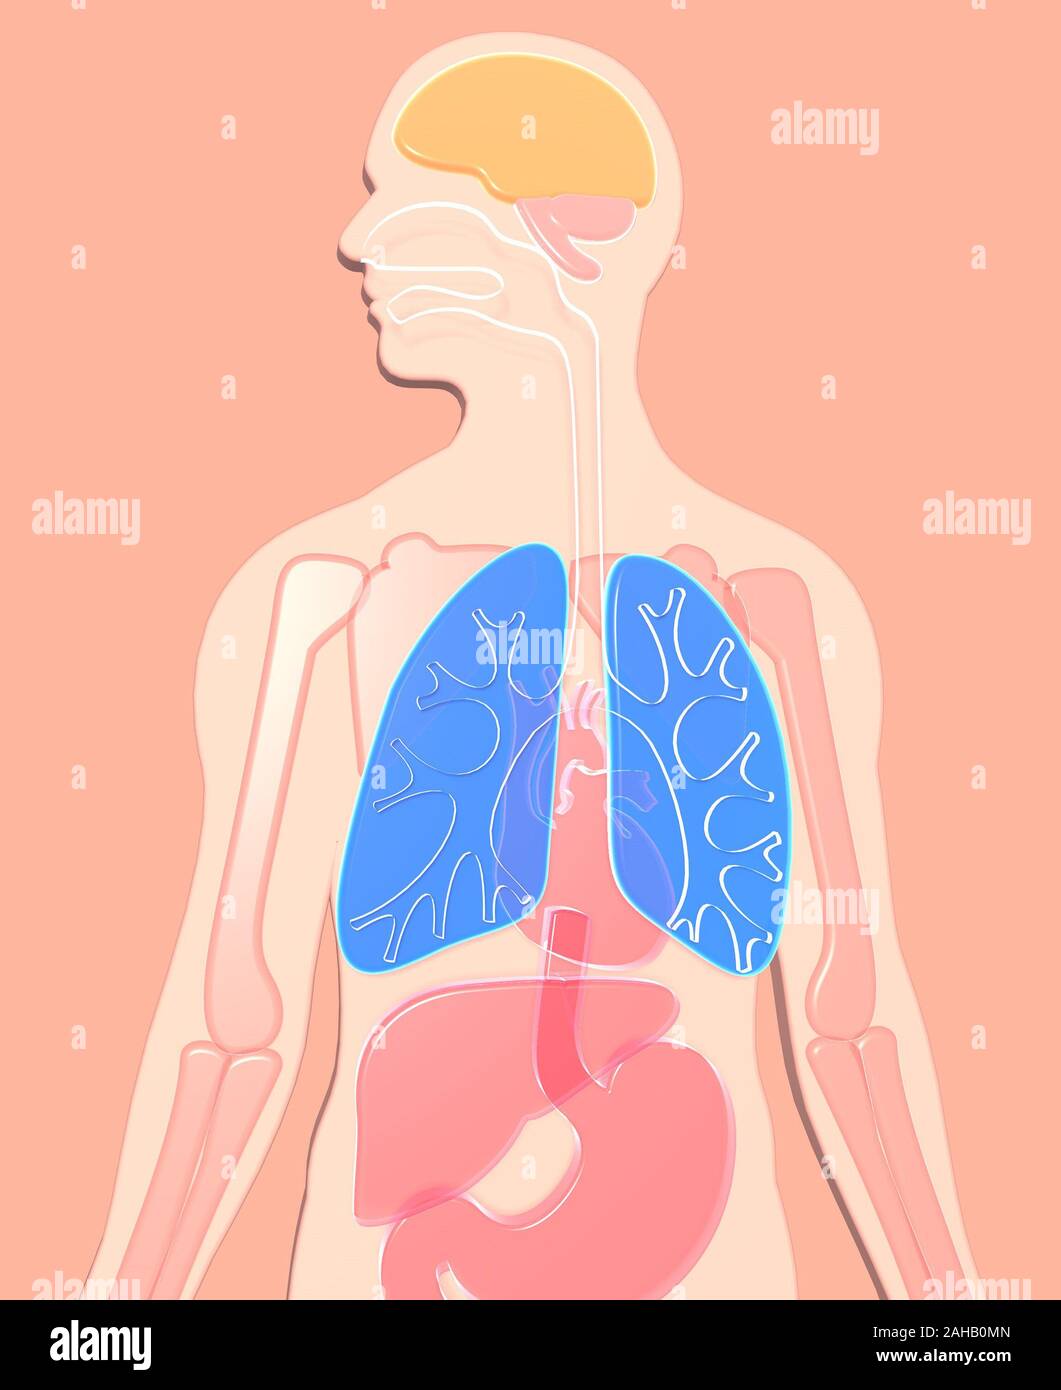 Ilustración 3D de la anatomía humana hecha de plástico semitransparente, sistema digestivo, esófago, duodeno, pulmones highlighte. Foto de stock